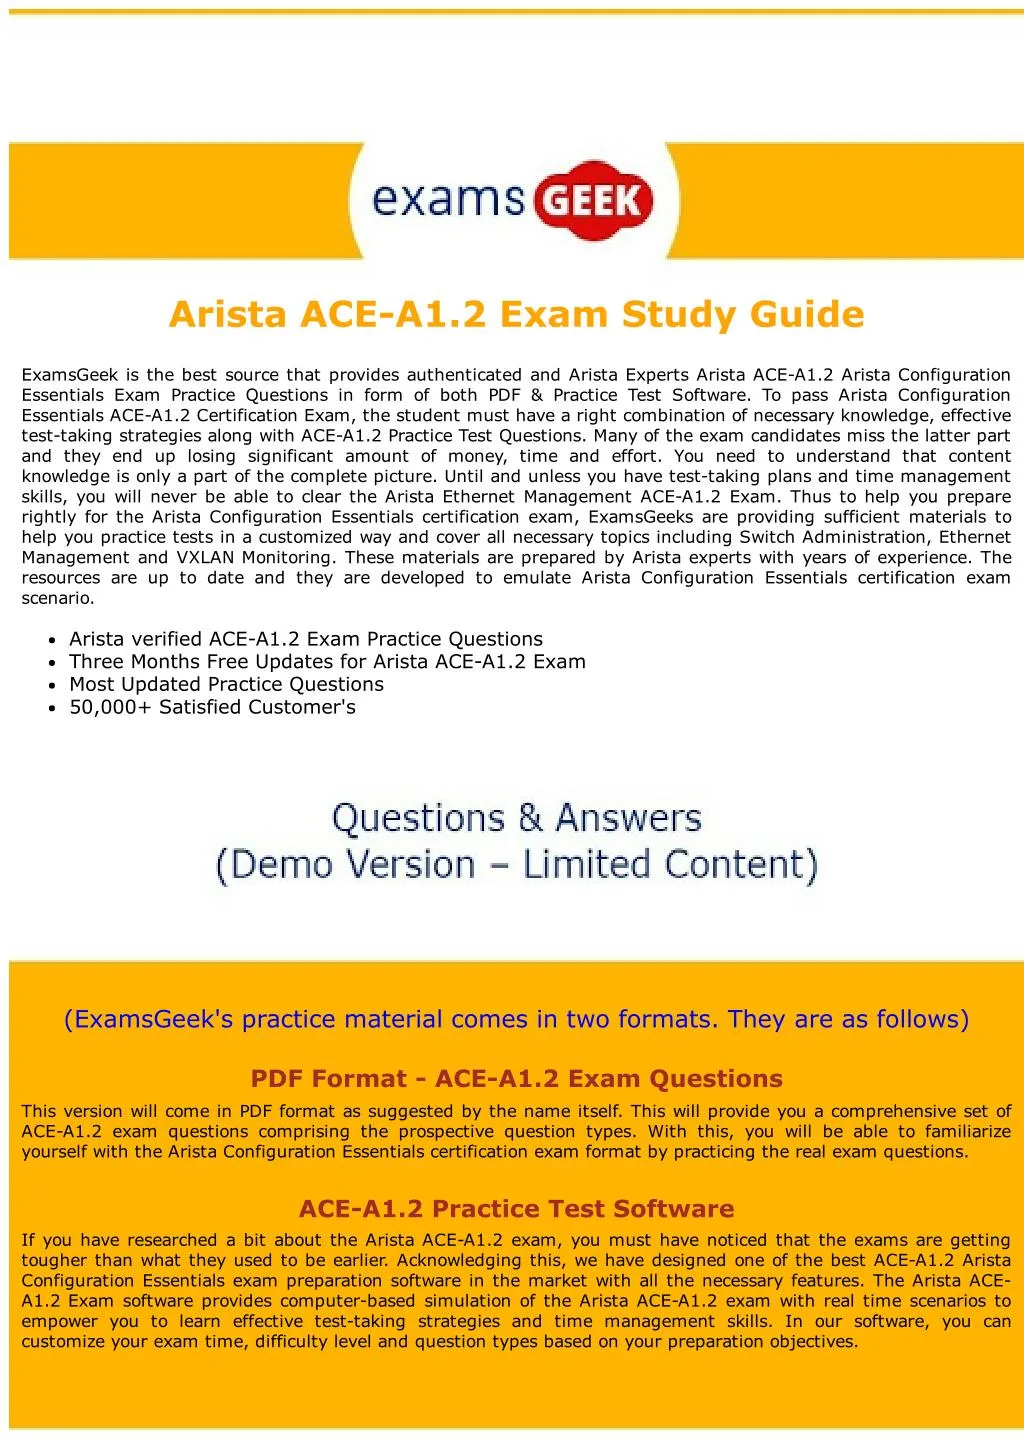 arista ace a1 2 exam study guide